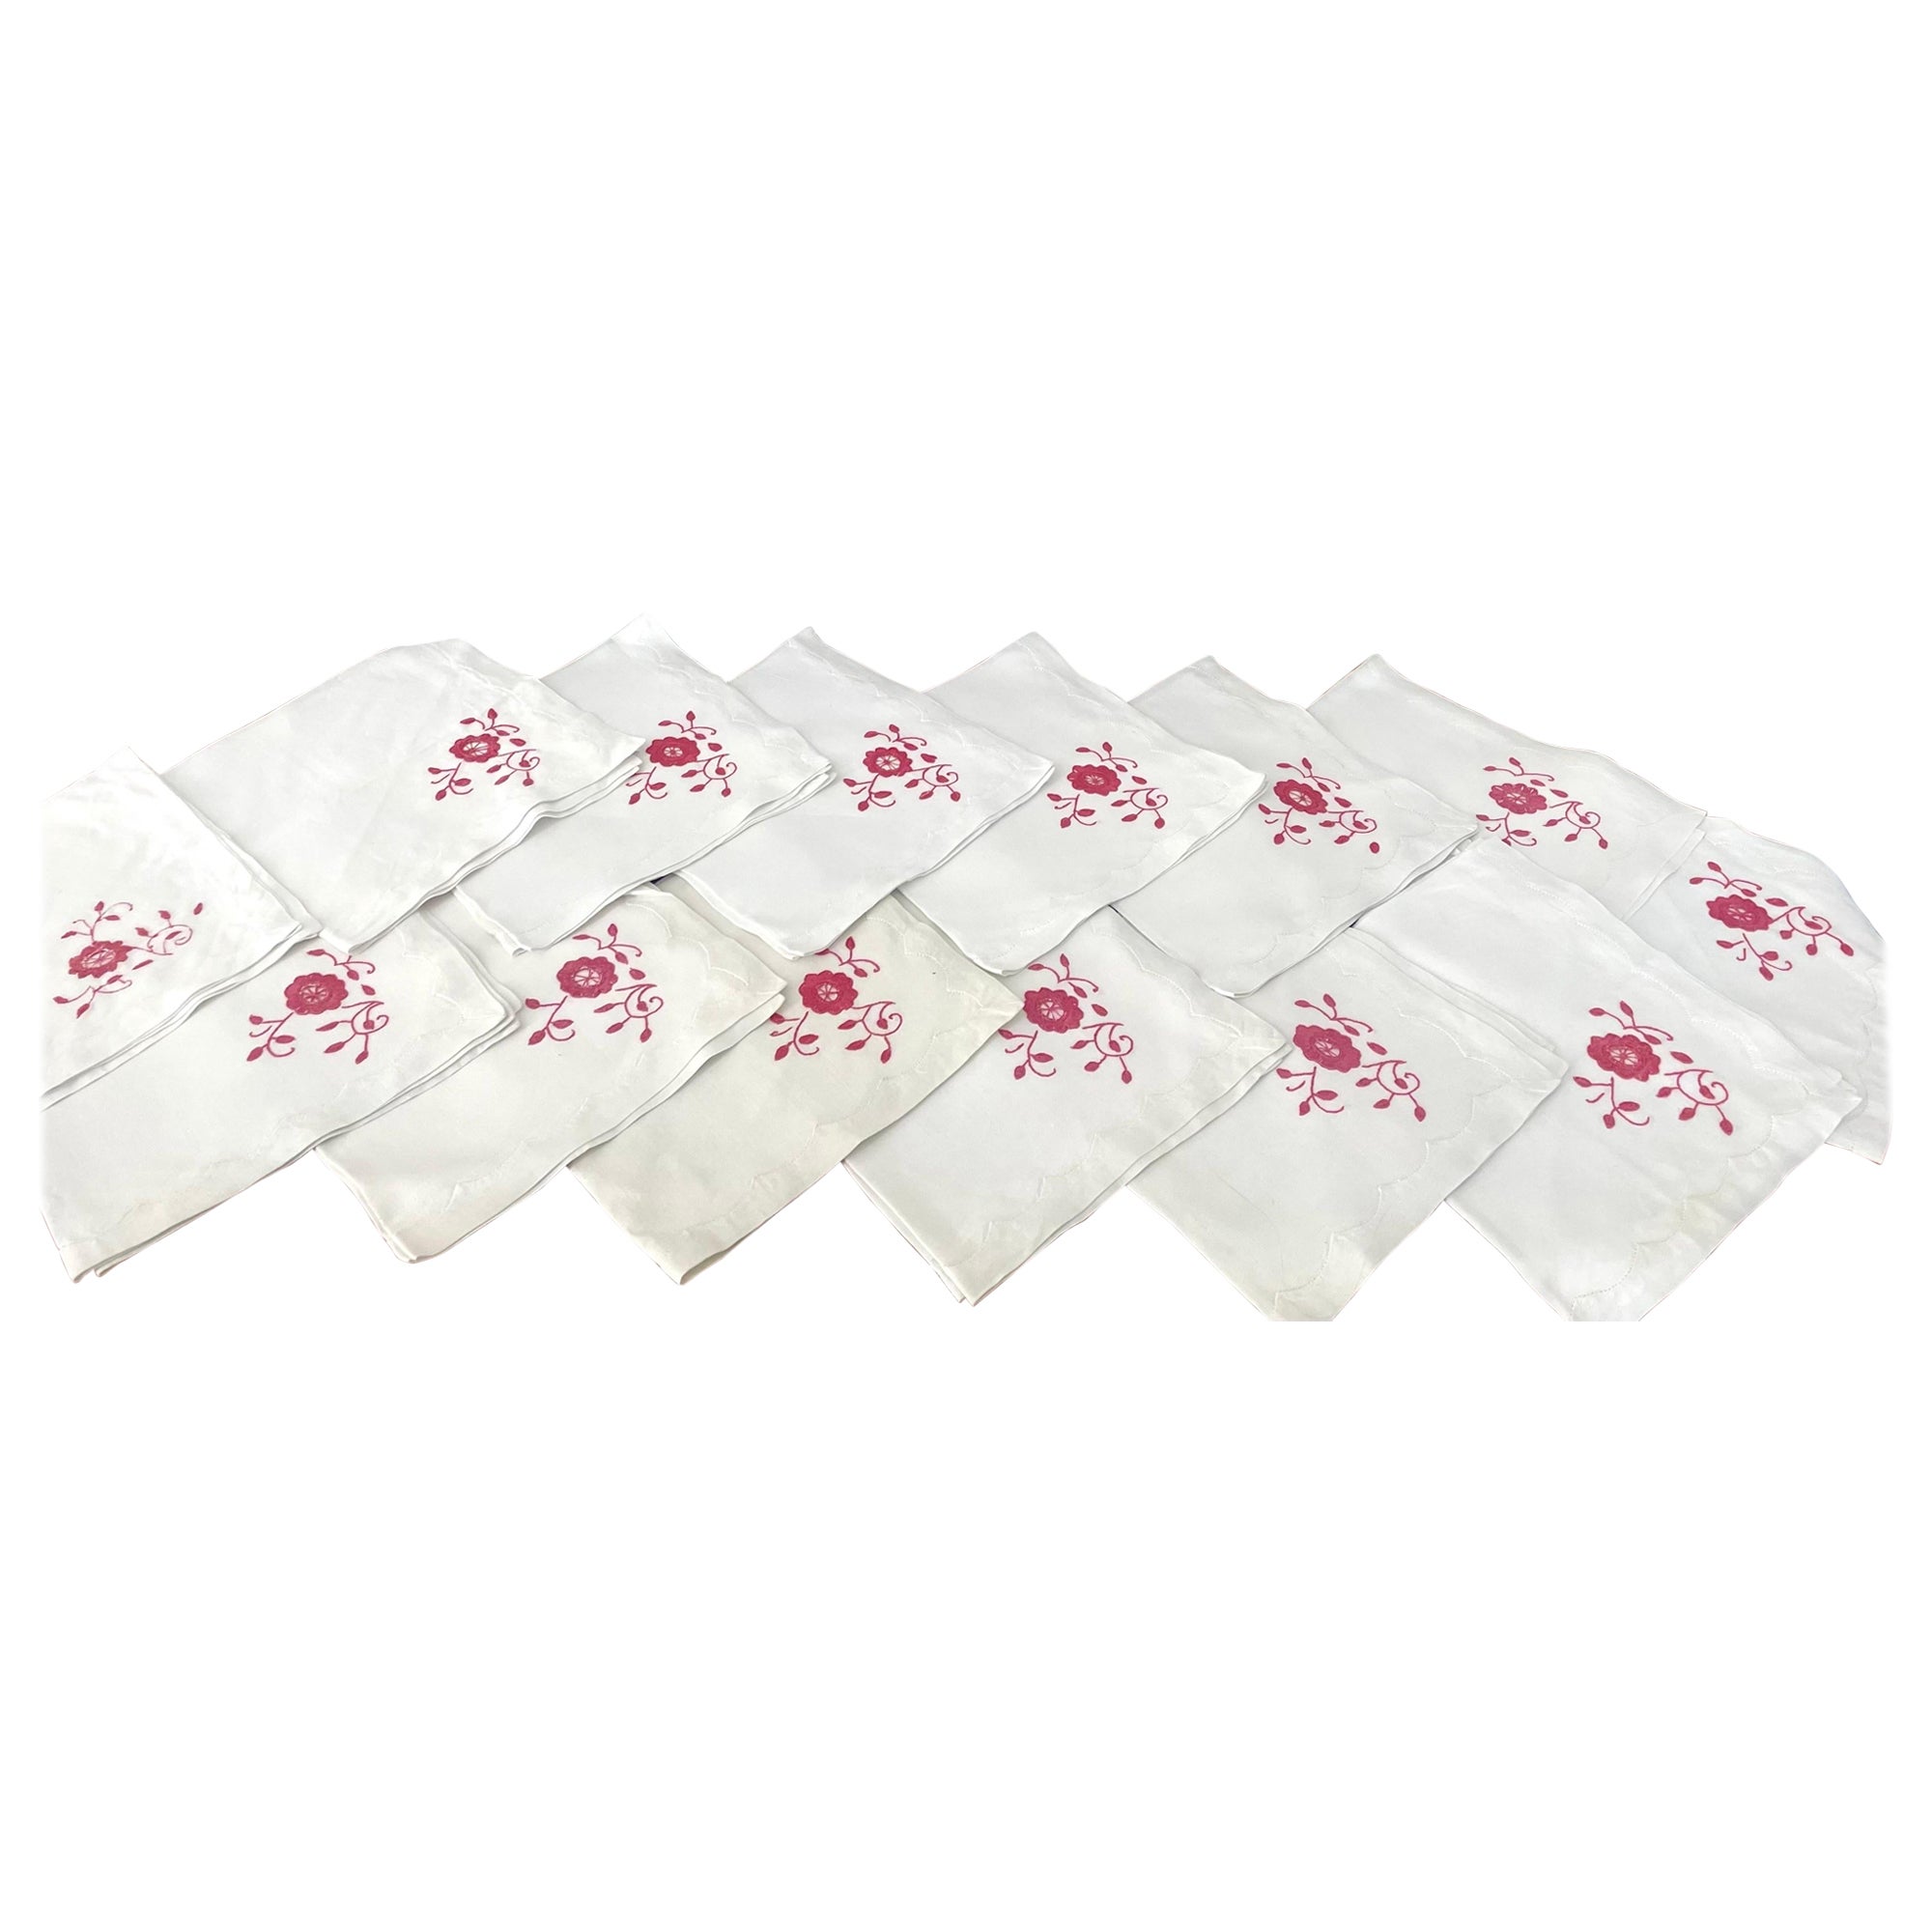 Ensemble français ancien de 14 serviettes en lin blanc brodées de roses rouges Art Nouveau de 1900